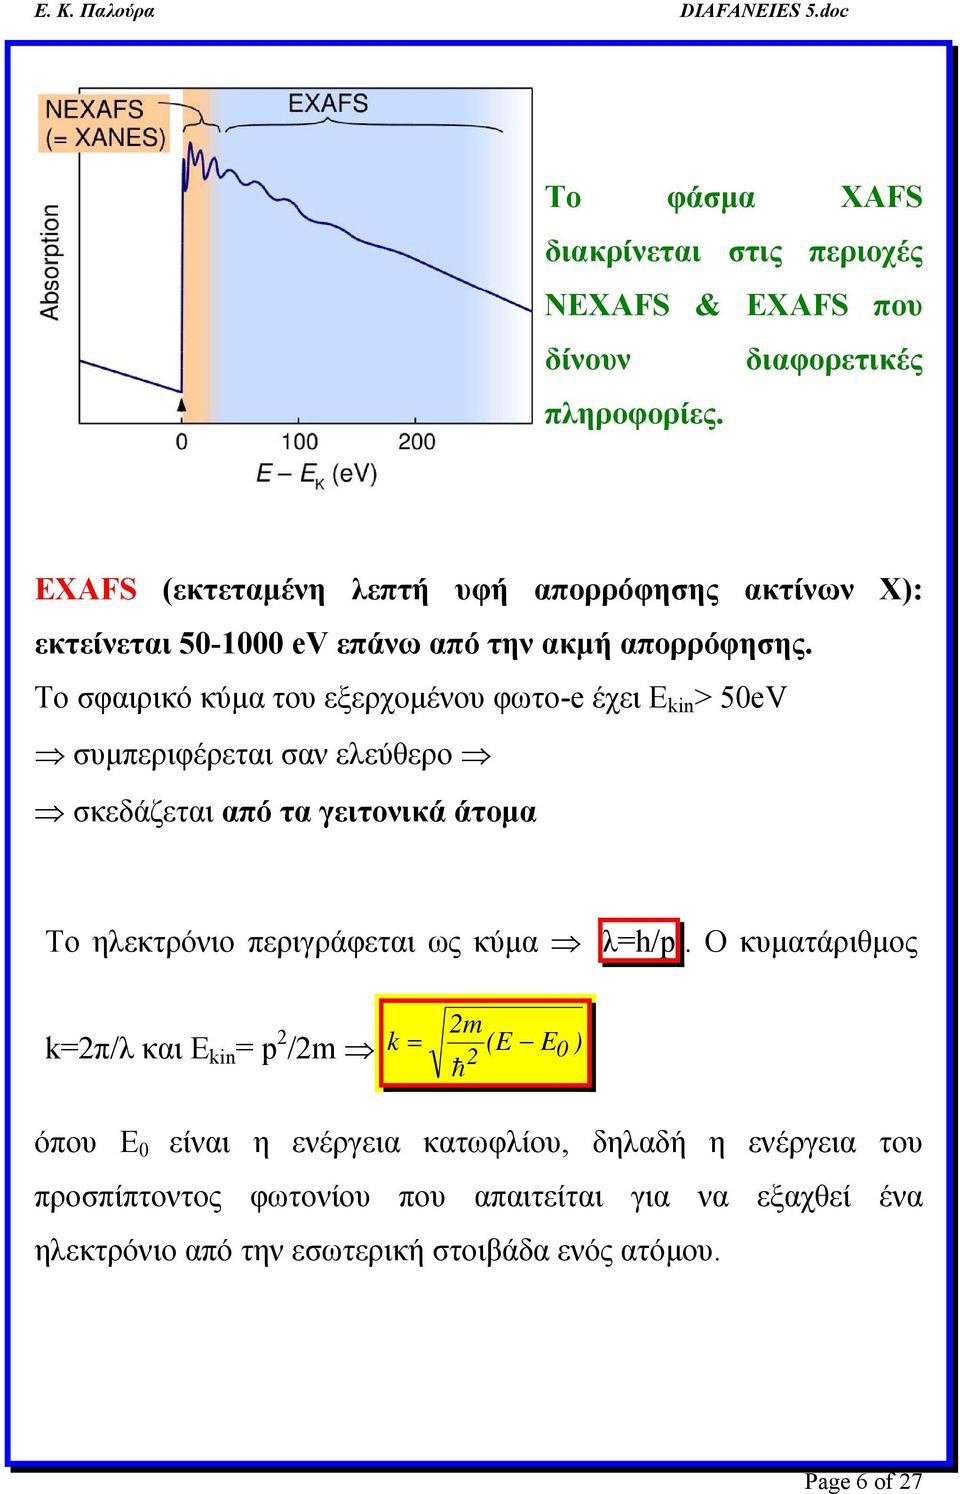 Το σφαιρικό κύμα του εξερχομένου φωτο-e έχει Ε kin > 5eV συμπεριφέρεται σαν ελεύθερο σκεδάζεται από τα γειτονικά άτομα Tο ηλεκτρόνιο περιγράφεται